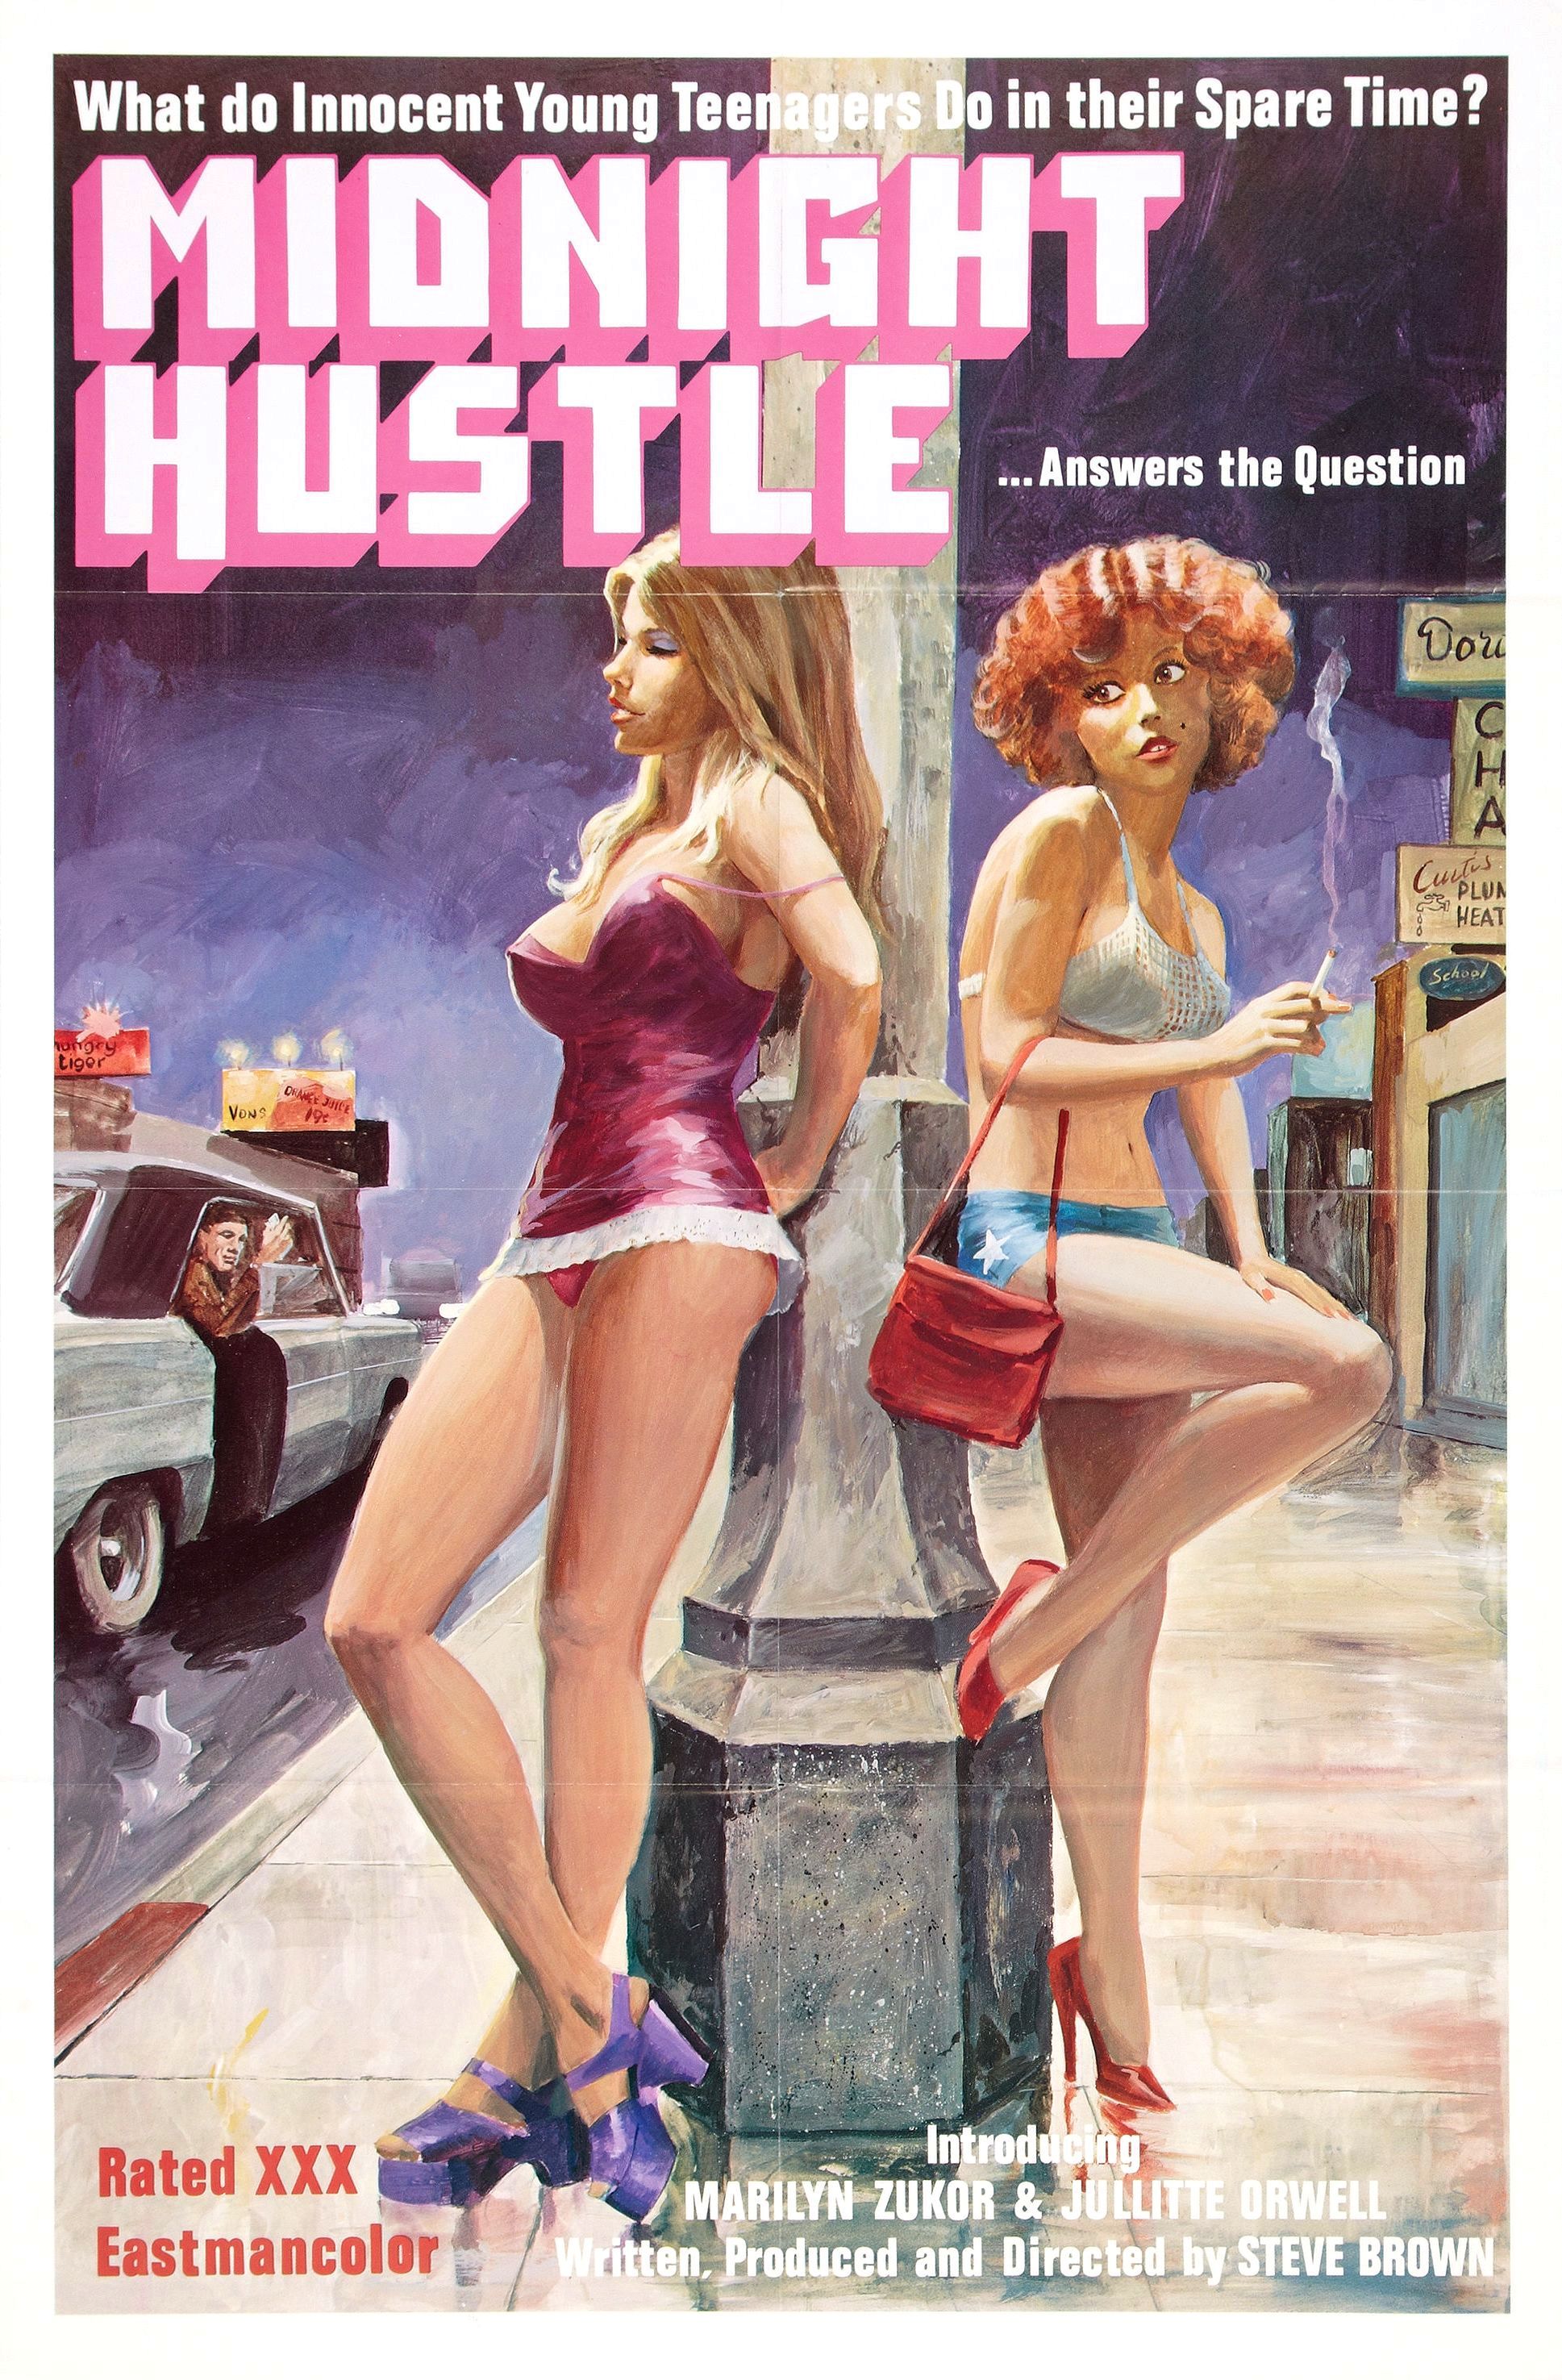 Movie Erotic Full Hustler 69